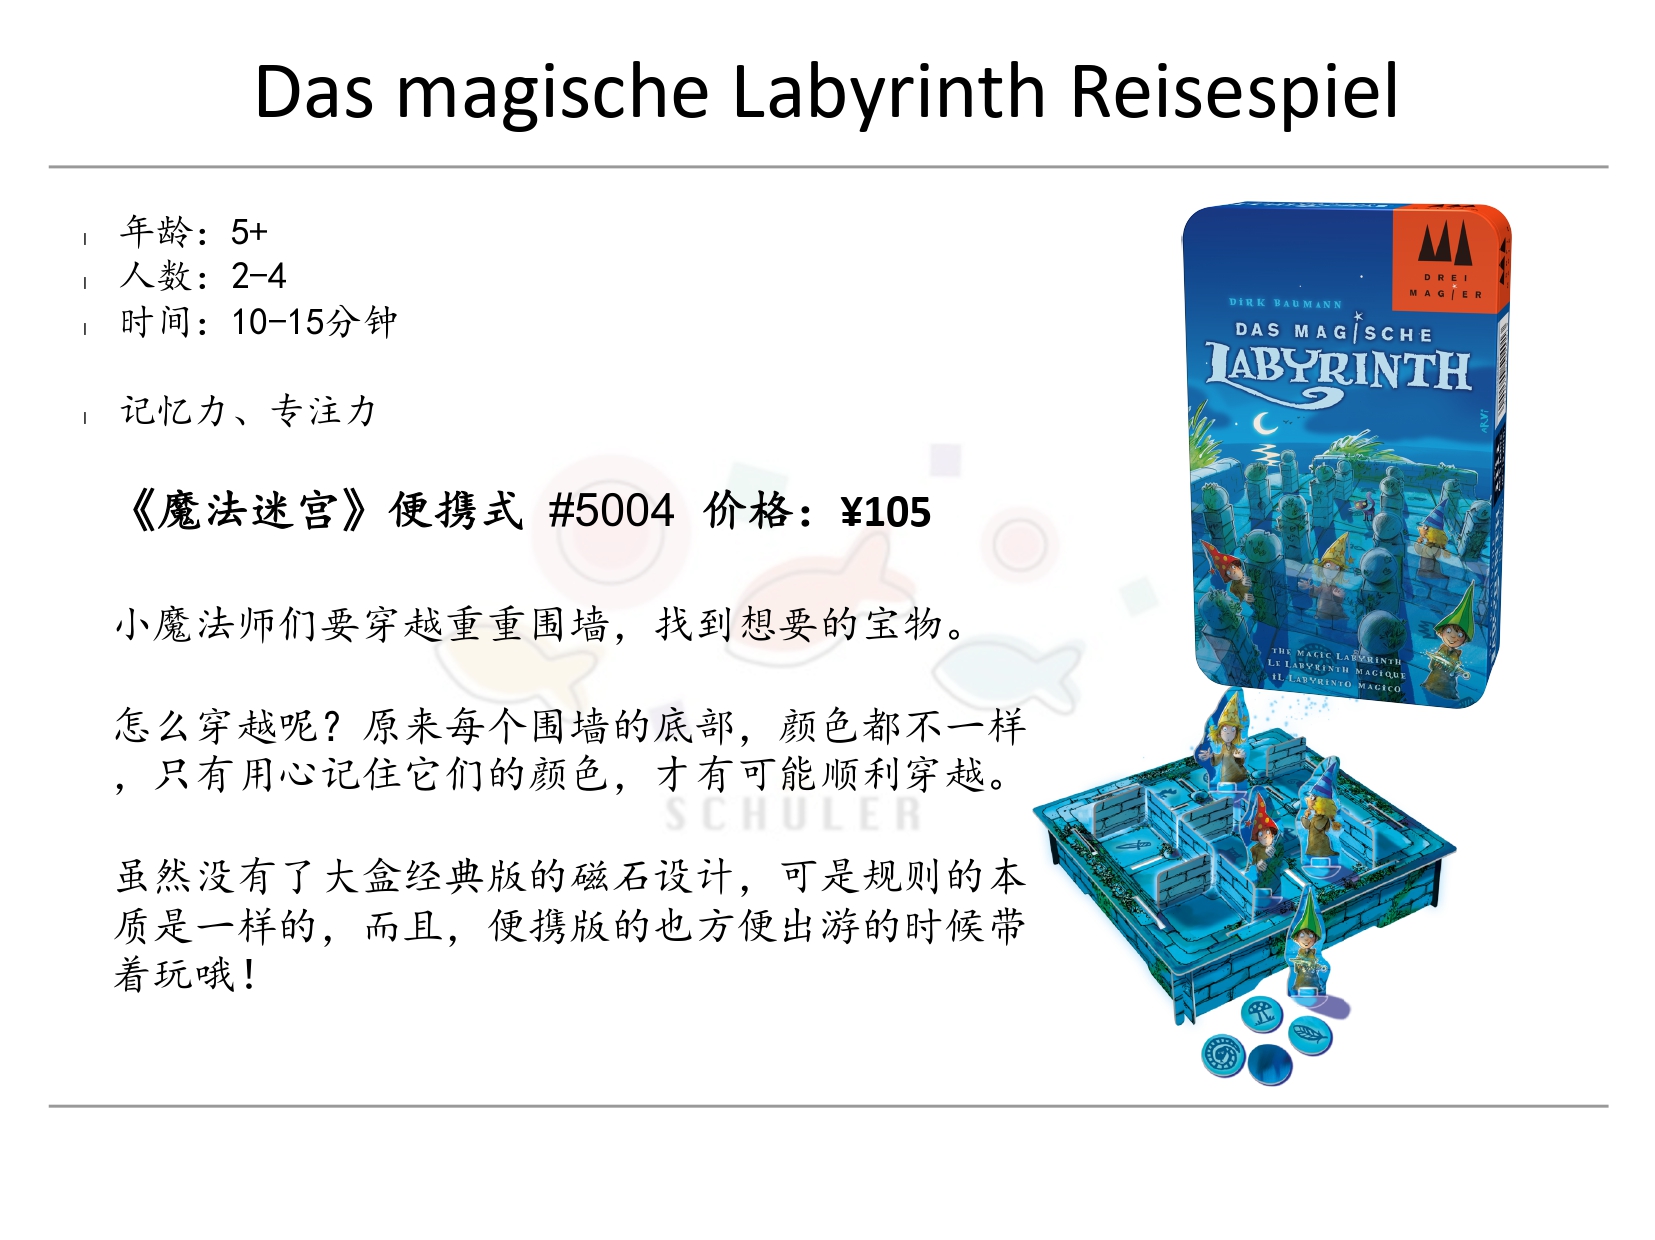 Das magische Labyrinth Reisespiel 魔法迷宫便携版